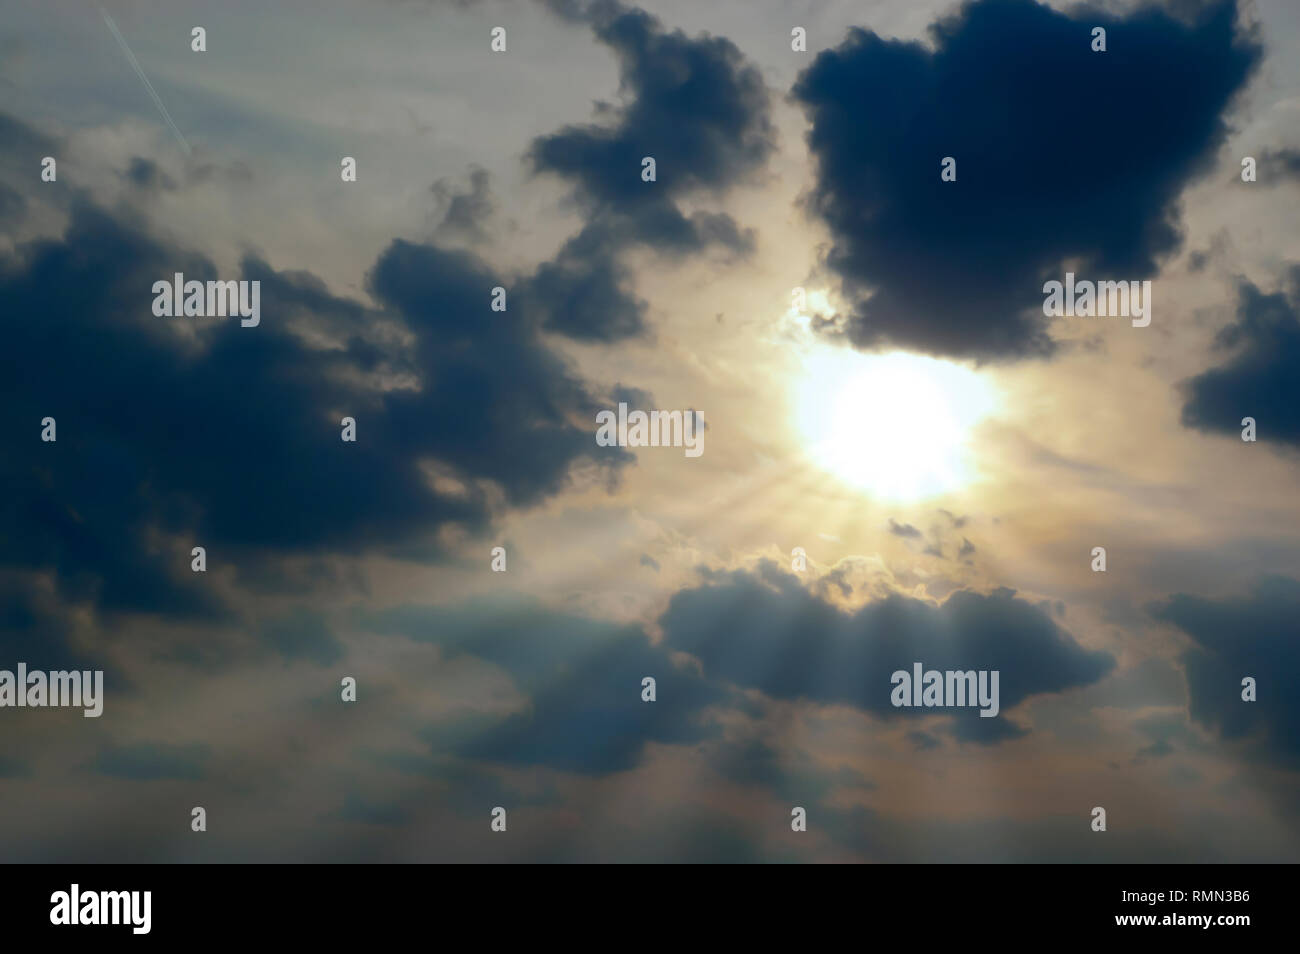 Sonnenstrahlen Strahlen von der Sonne teilweise durch eine Bank von dunklen Wolken stratocumulus Verweilen in den Himmel nach einem Sommer Sturm abgedeckt. Stockfoto